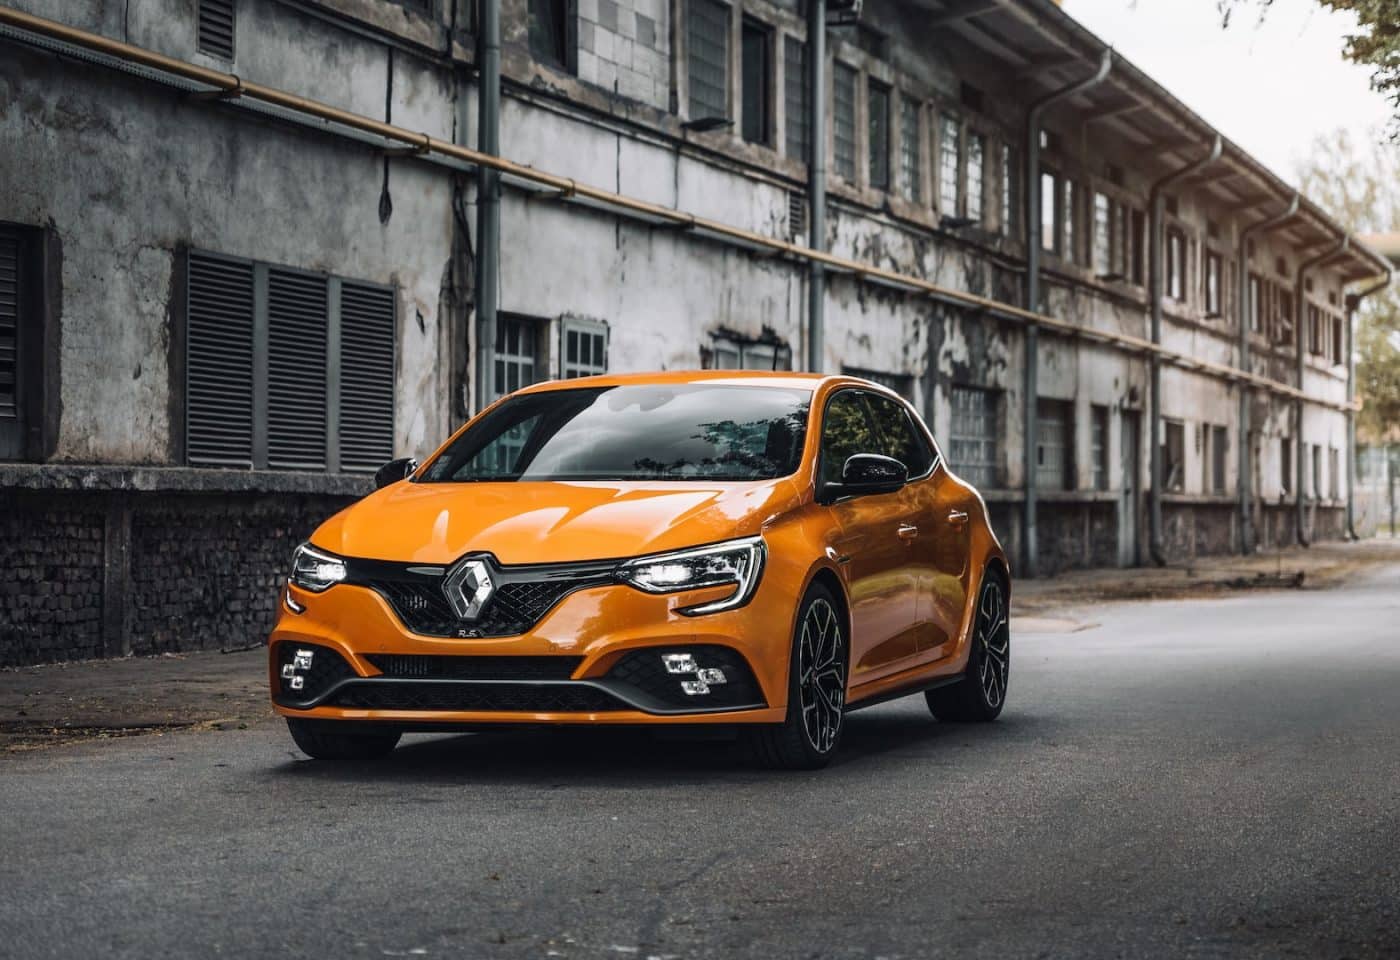 Voiture Renault de couleur orange.